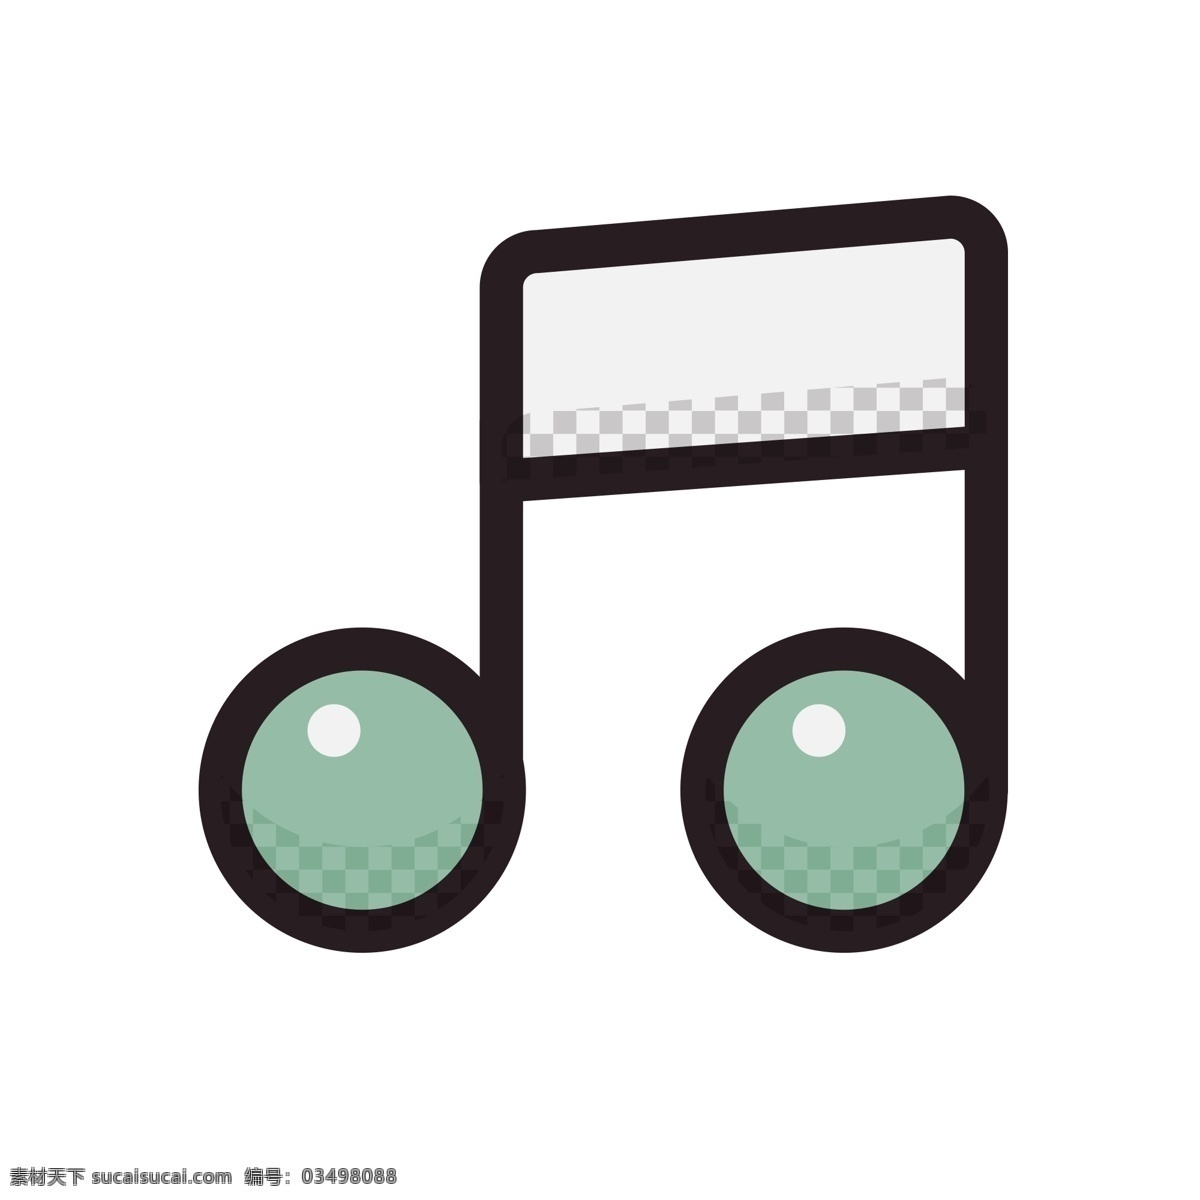 音乐图标 音乐 音乐符号 卡通插图 创意卡通下载 插图 png图下载